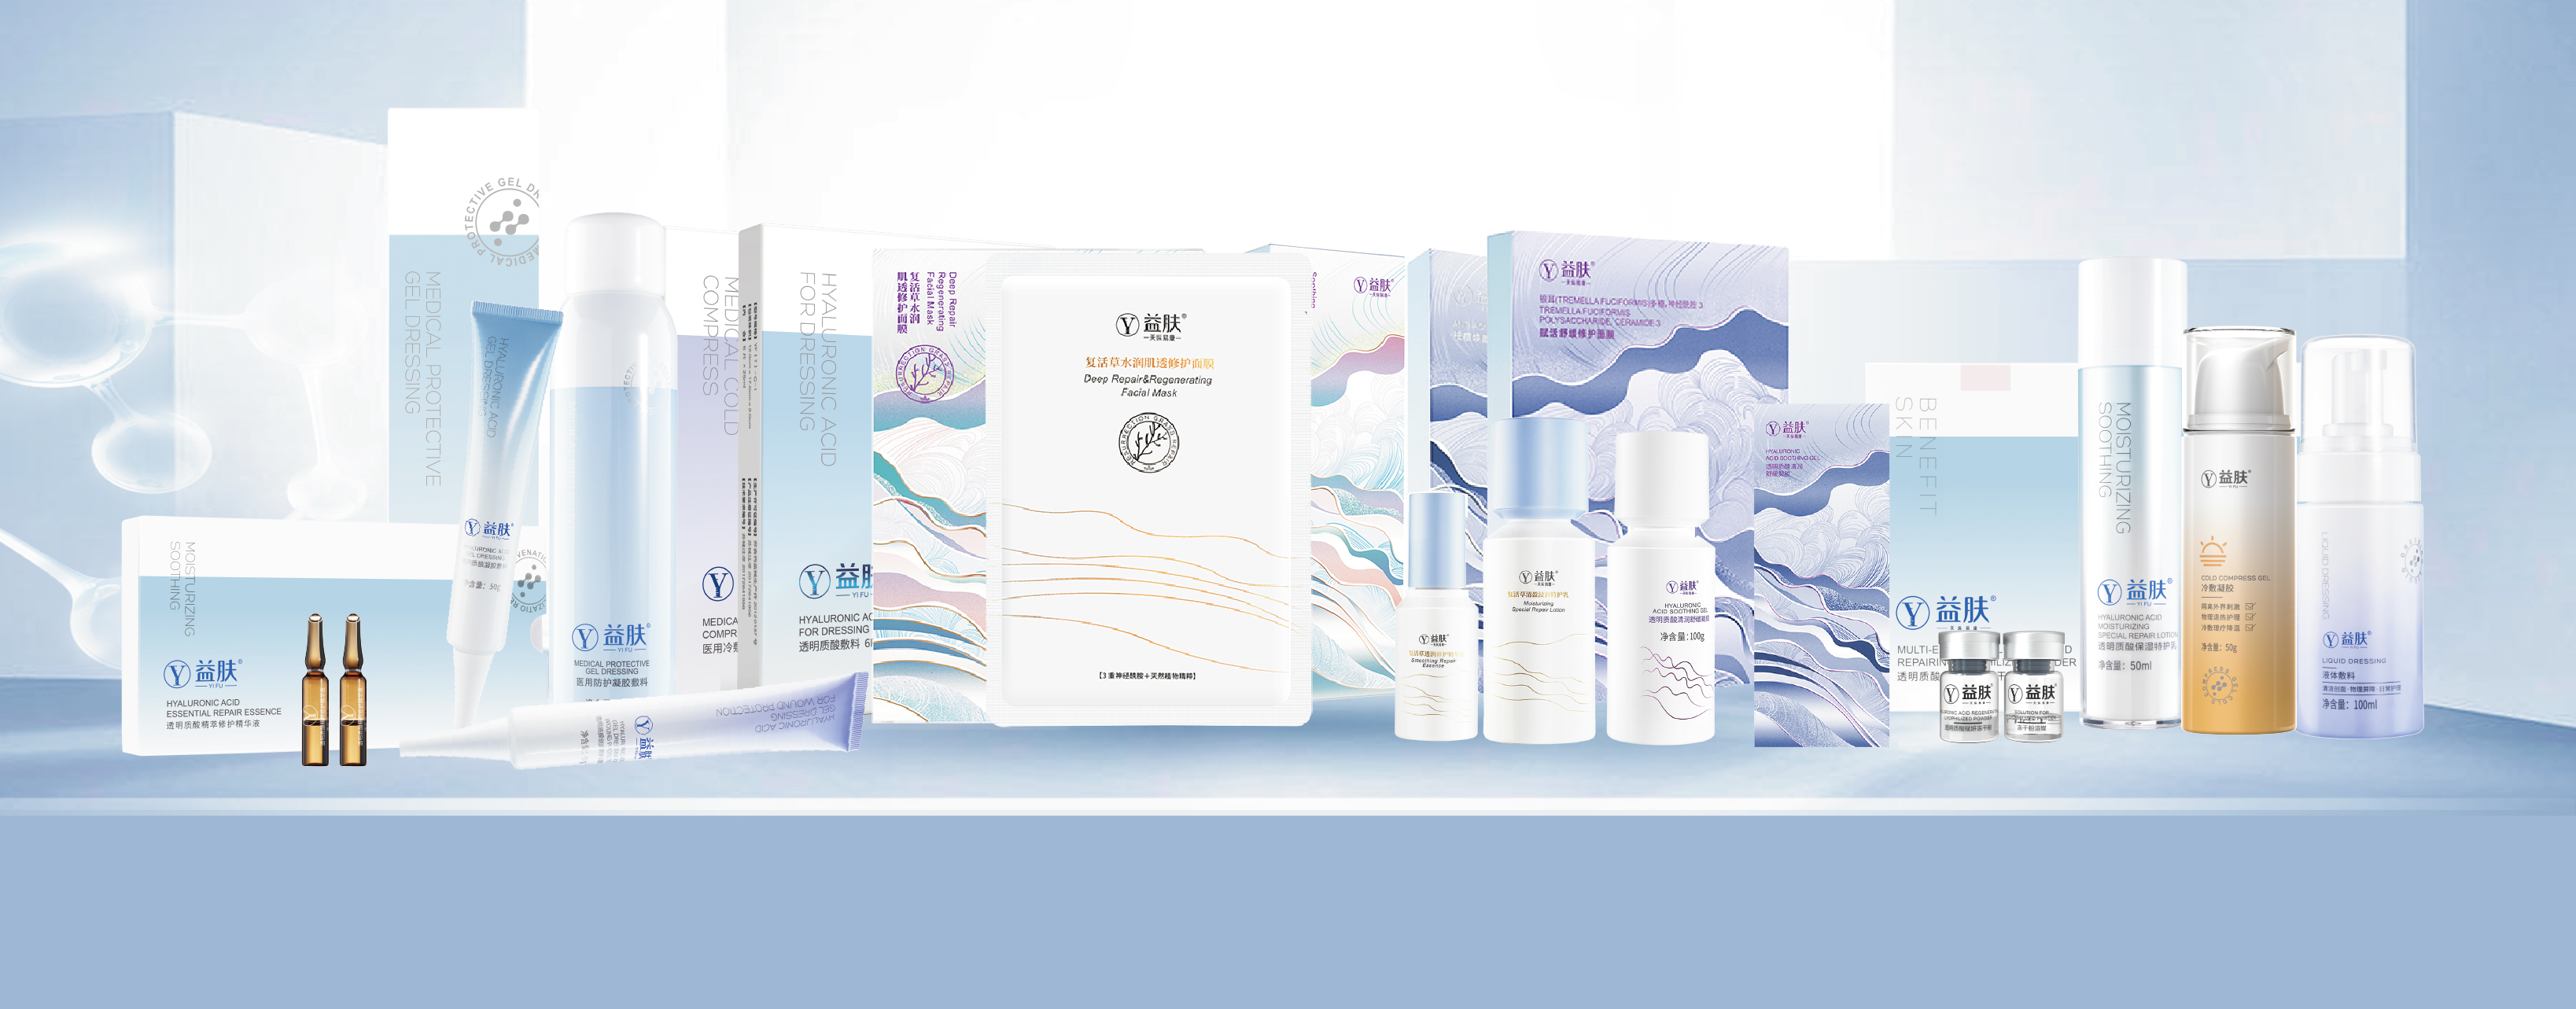 循证皮肤科学铸就品牌，益肤全新升级“皮肤急救用益肤”产品系列